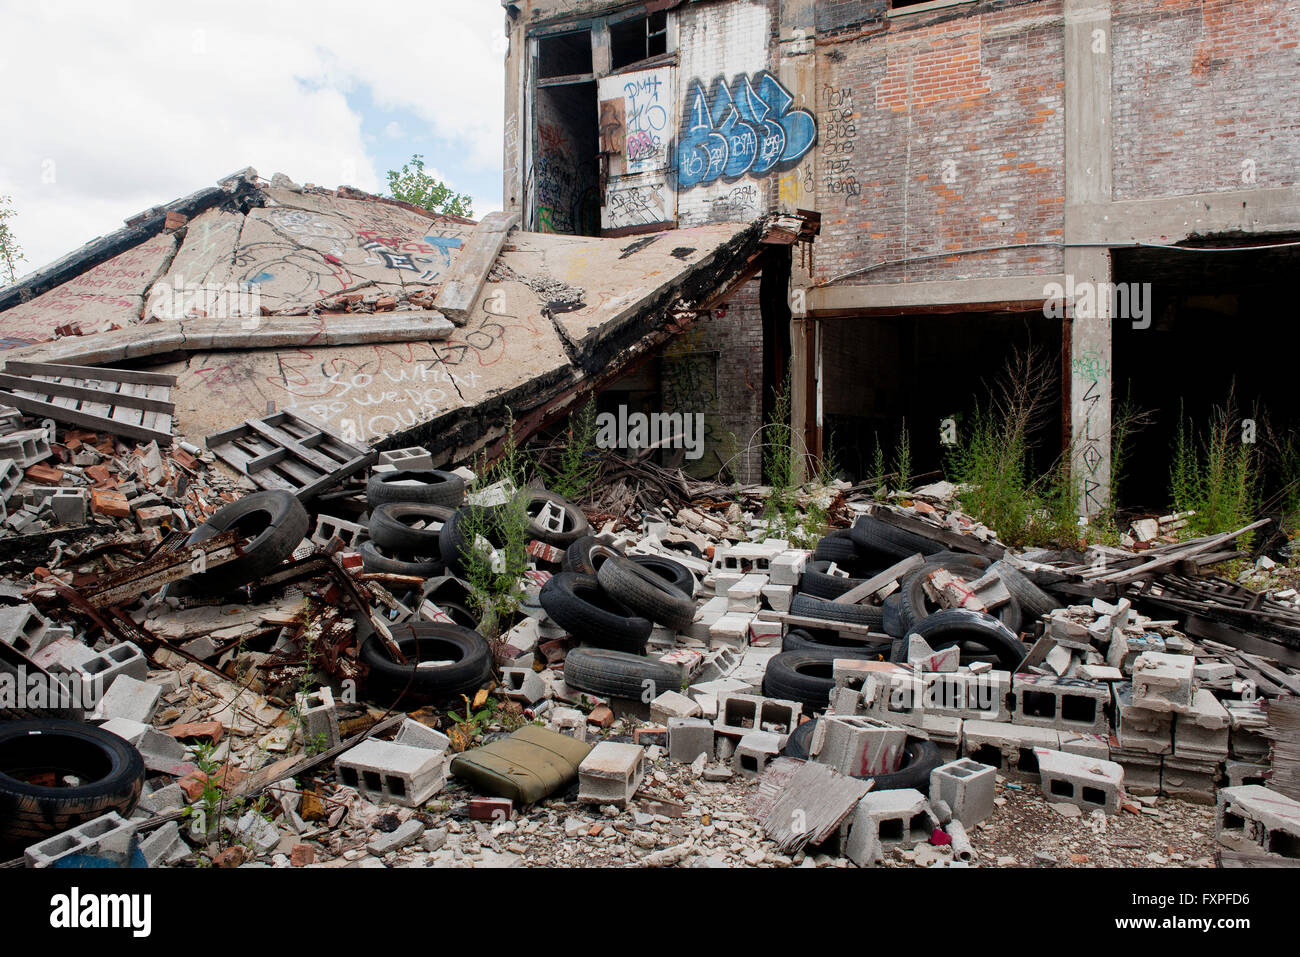 Basura y escombros amontonado junto al edificio abandonado en Detroit, Michigan, EE.UU. Foto de stock